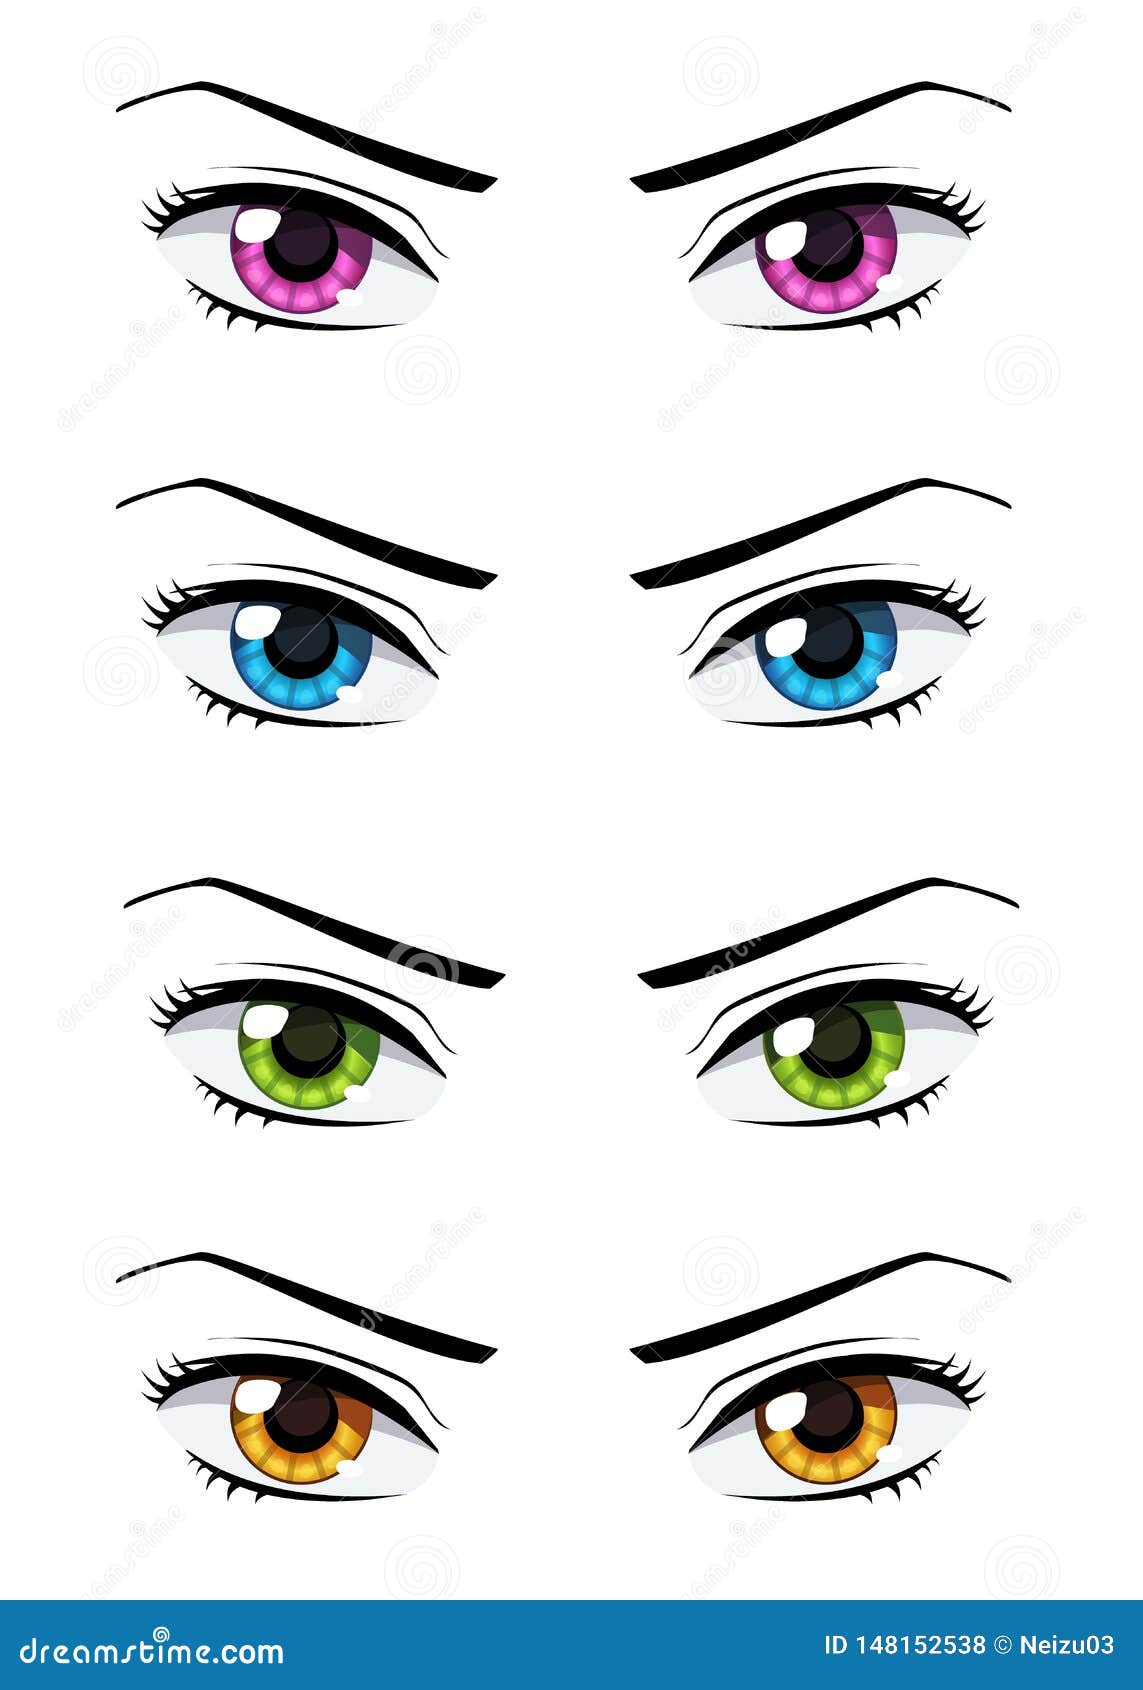 Set of anime style eyes stock illustration. Illustration of human -  148152538